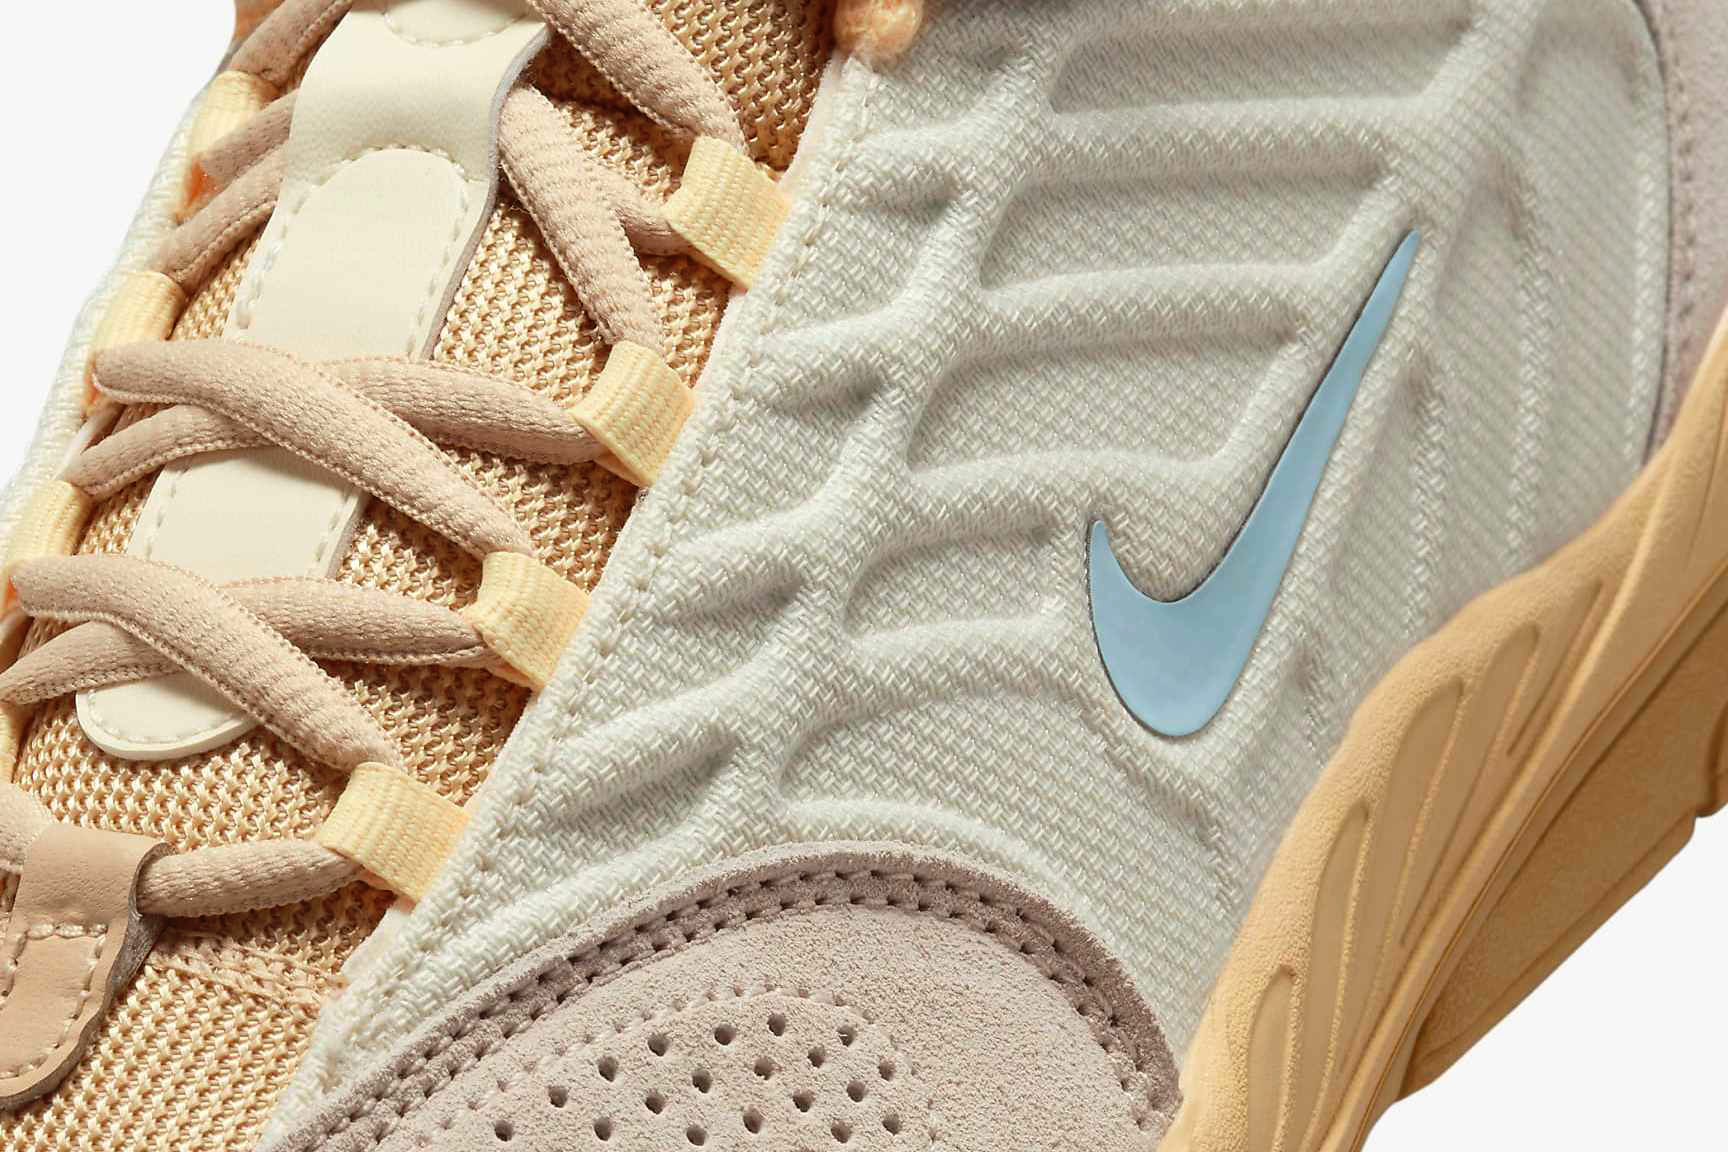 Nike SB's Vertebrae skate sneaker in beige and earth-toned colorways